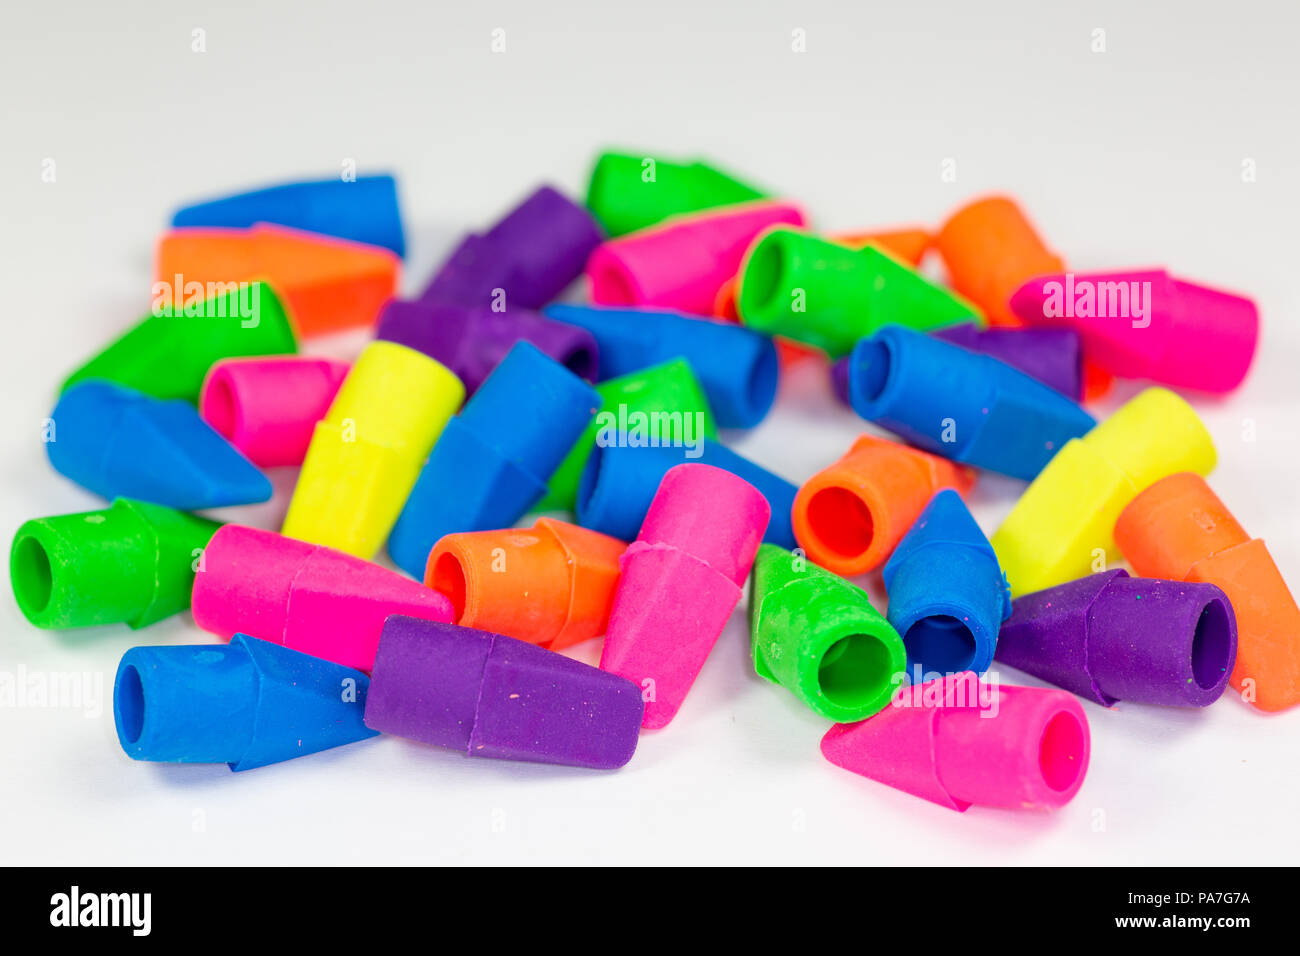 Coloridas gomas de borrar o borradores de los lápices recargada sobre una superficie blanca Foto de stock